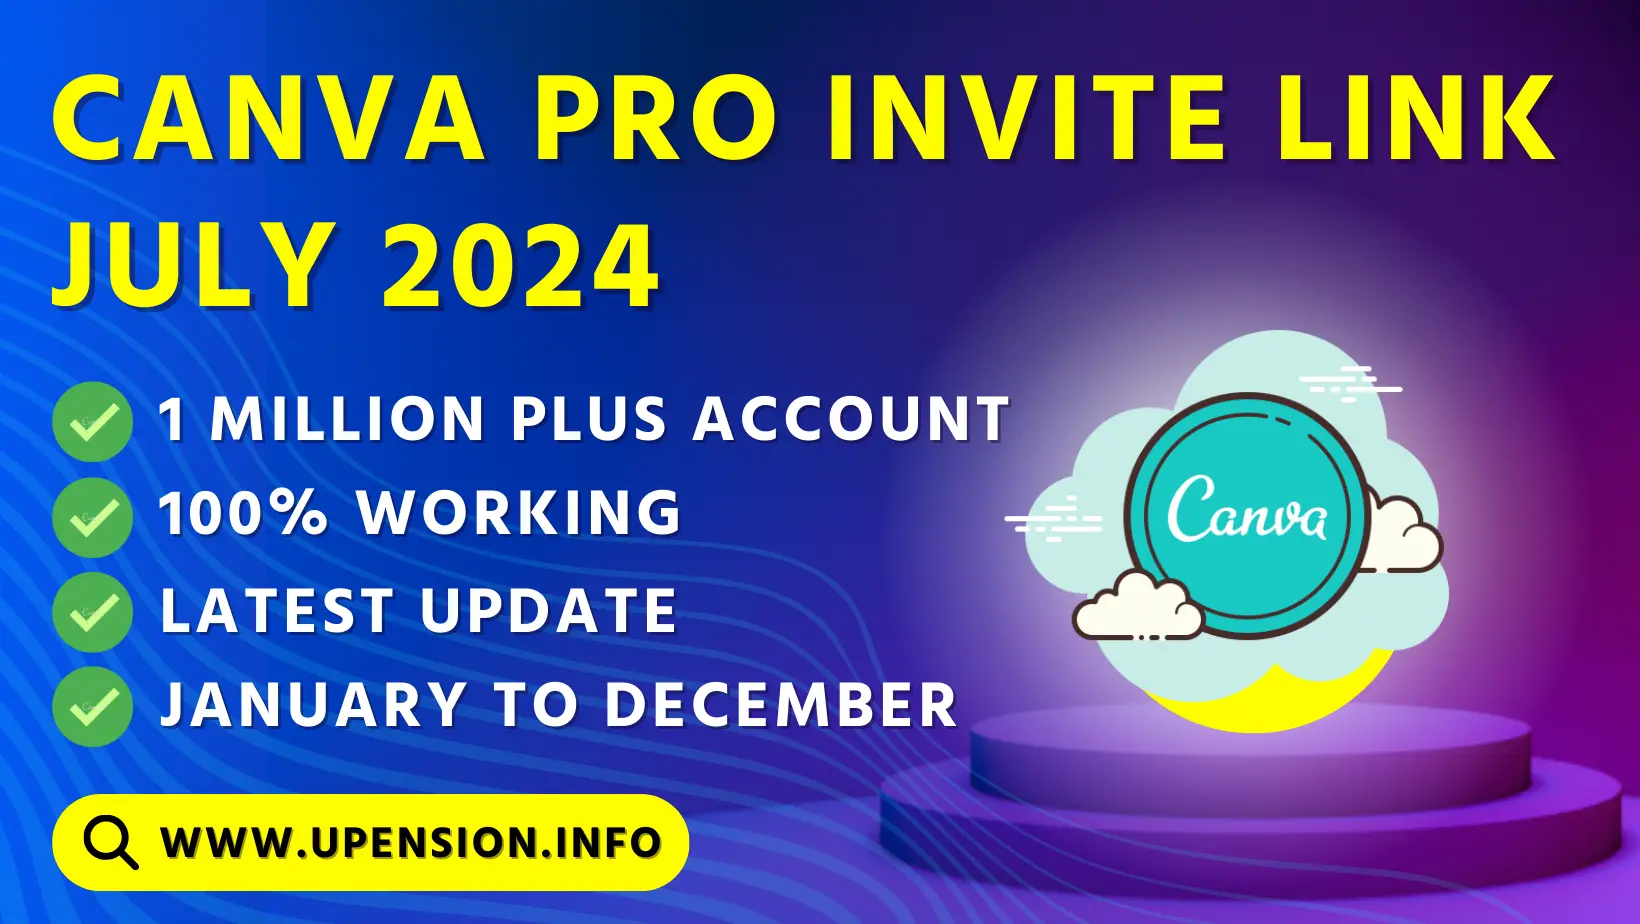 Canva pro invite link July 2024